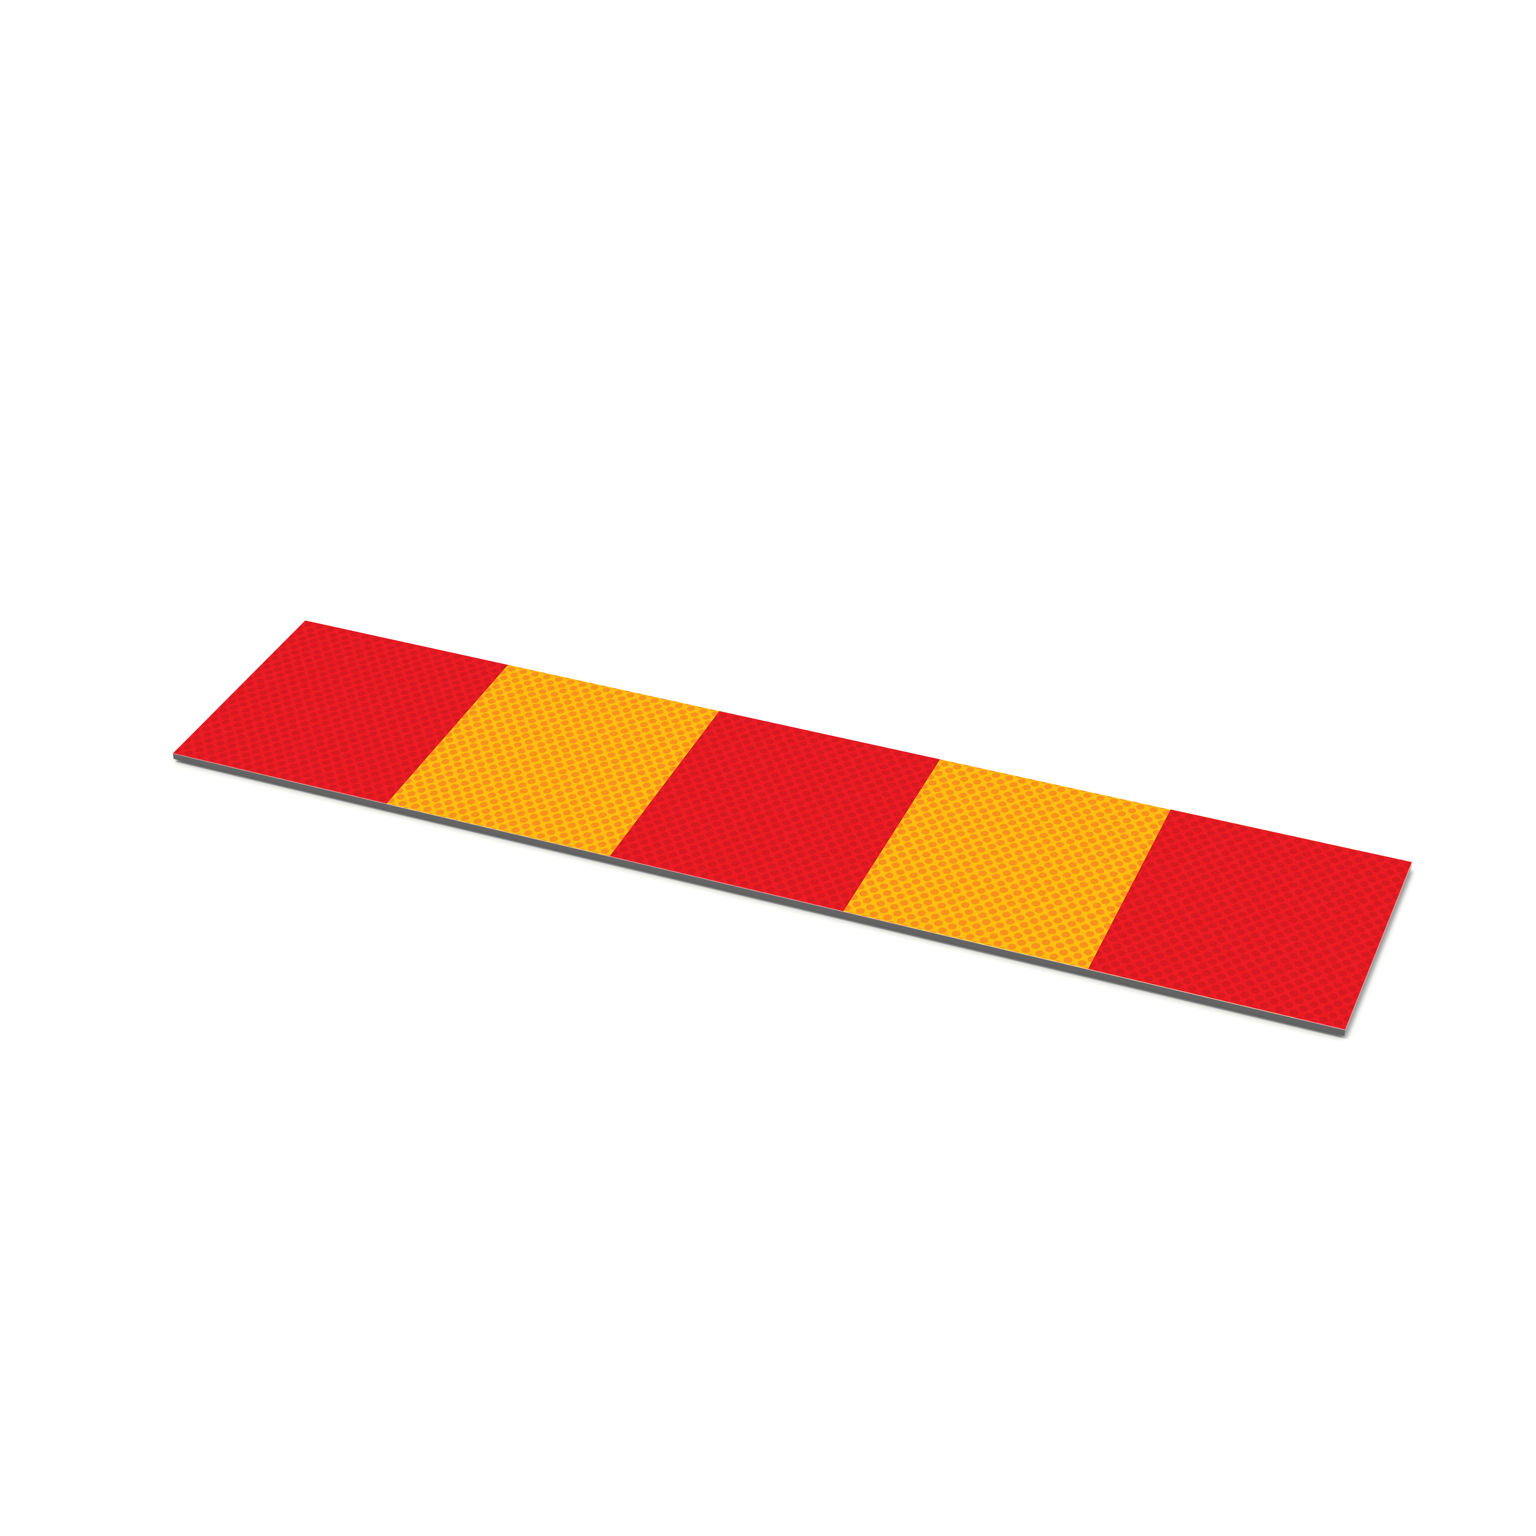 Reflexplatta till Trafistop-trafikhinder i betong. Markering i rött och gult för temporärt trafikhinder